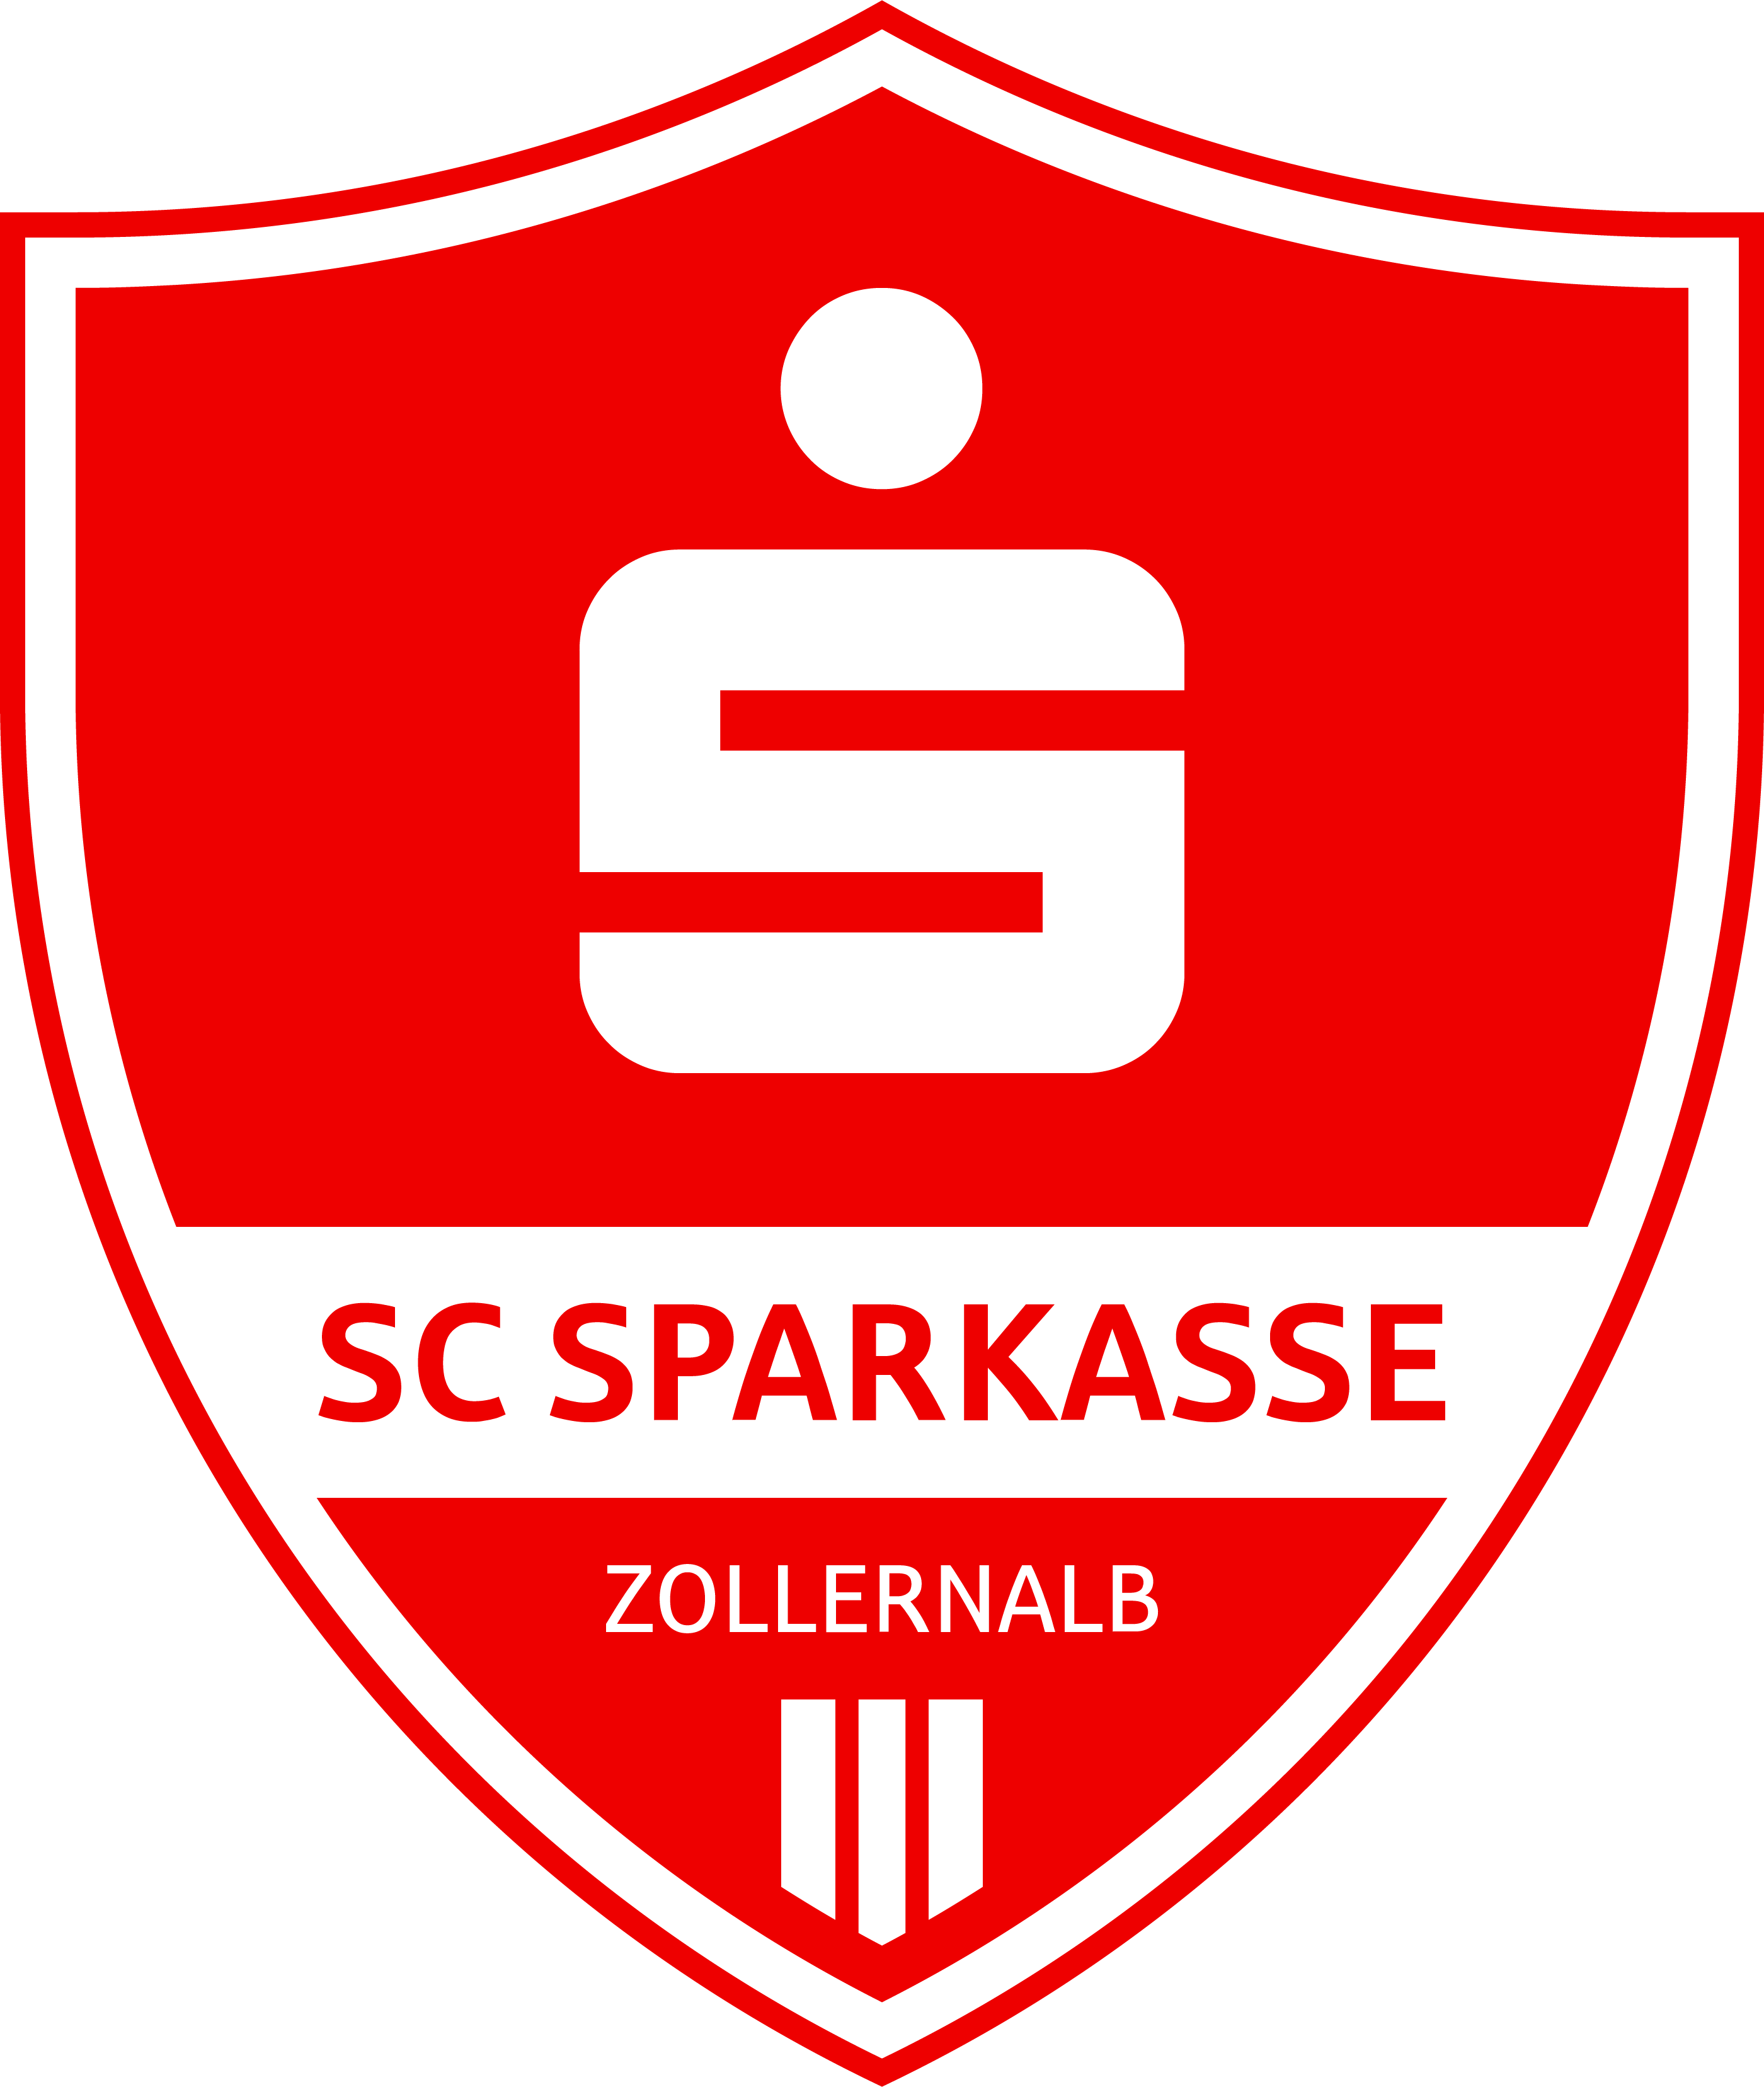 SCSparkasse_Zollernalb_1